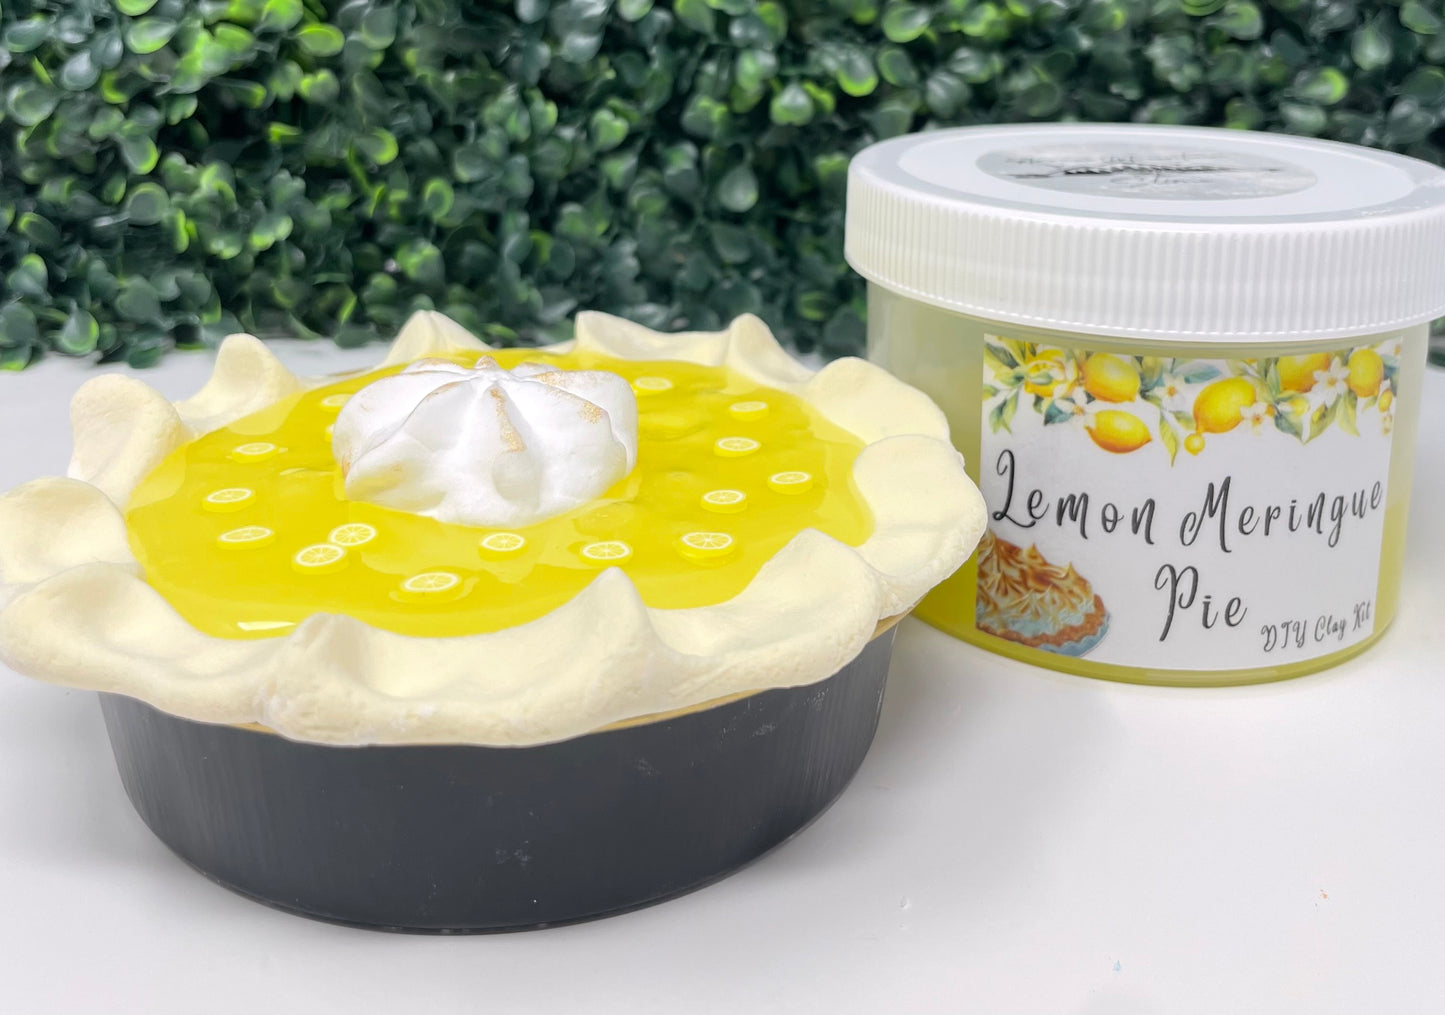 Lemon Meringue Pie DIY Clay Kit